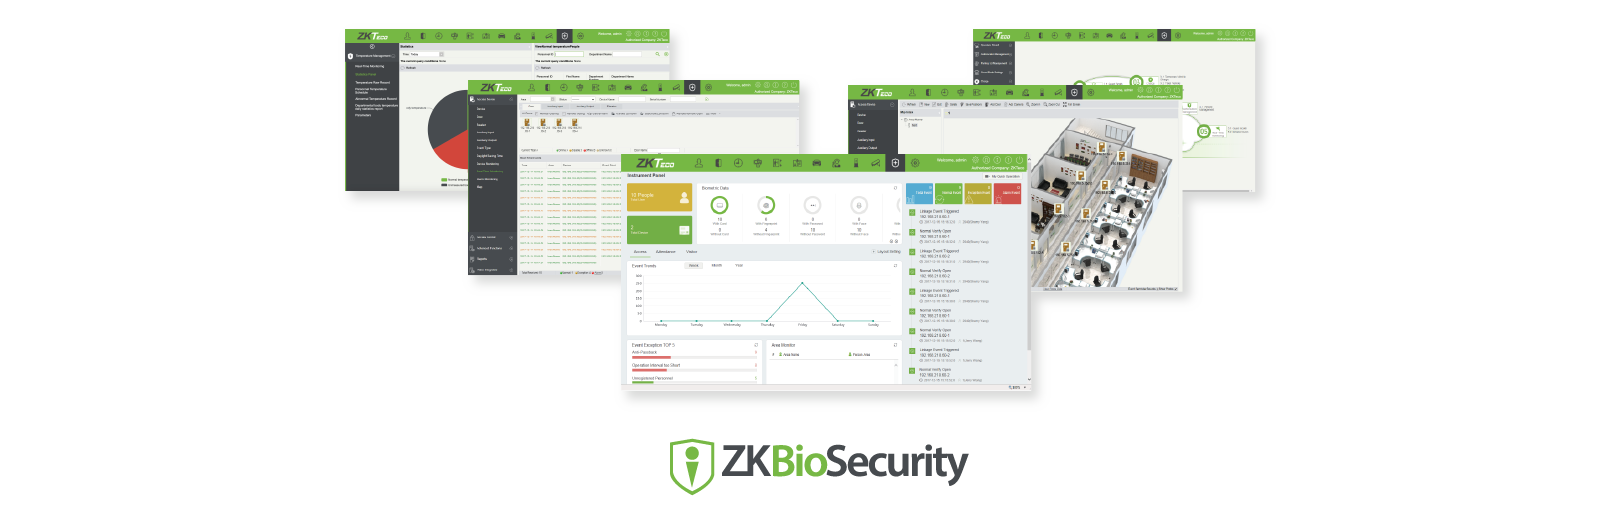 Suporte ZKBioSecurity Plataforma de gerenciamento de segurança biométrica tudo-em-um baseada na Web